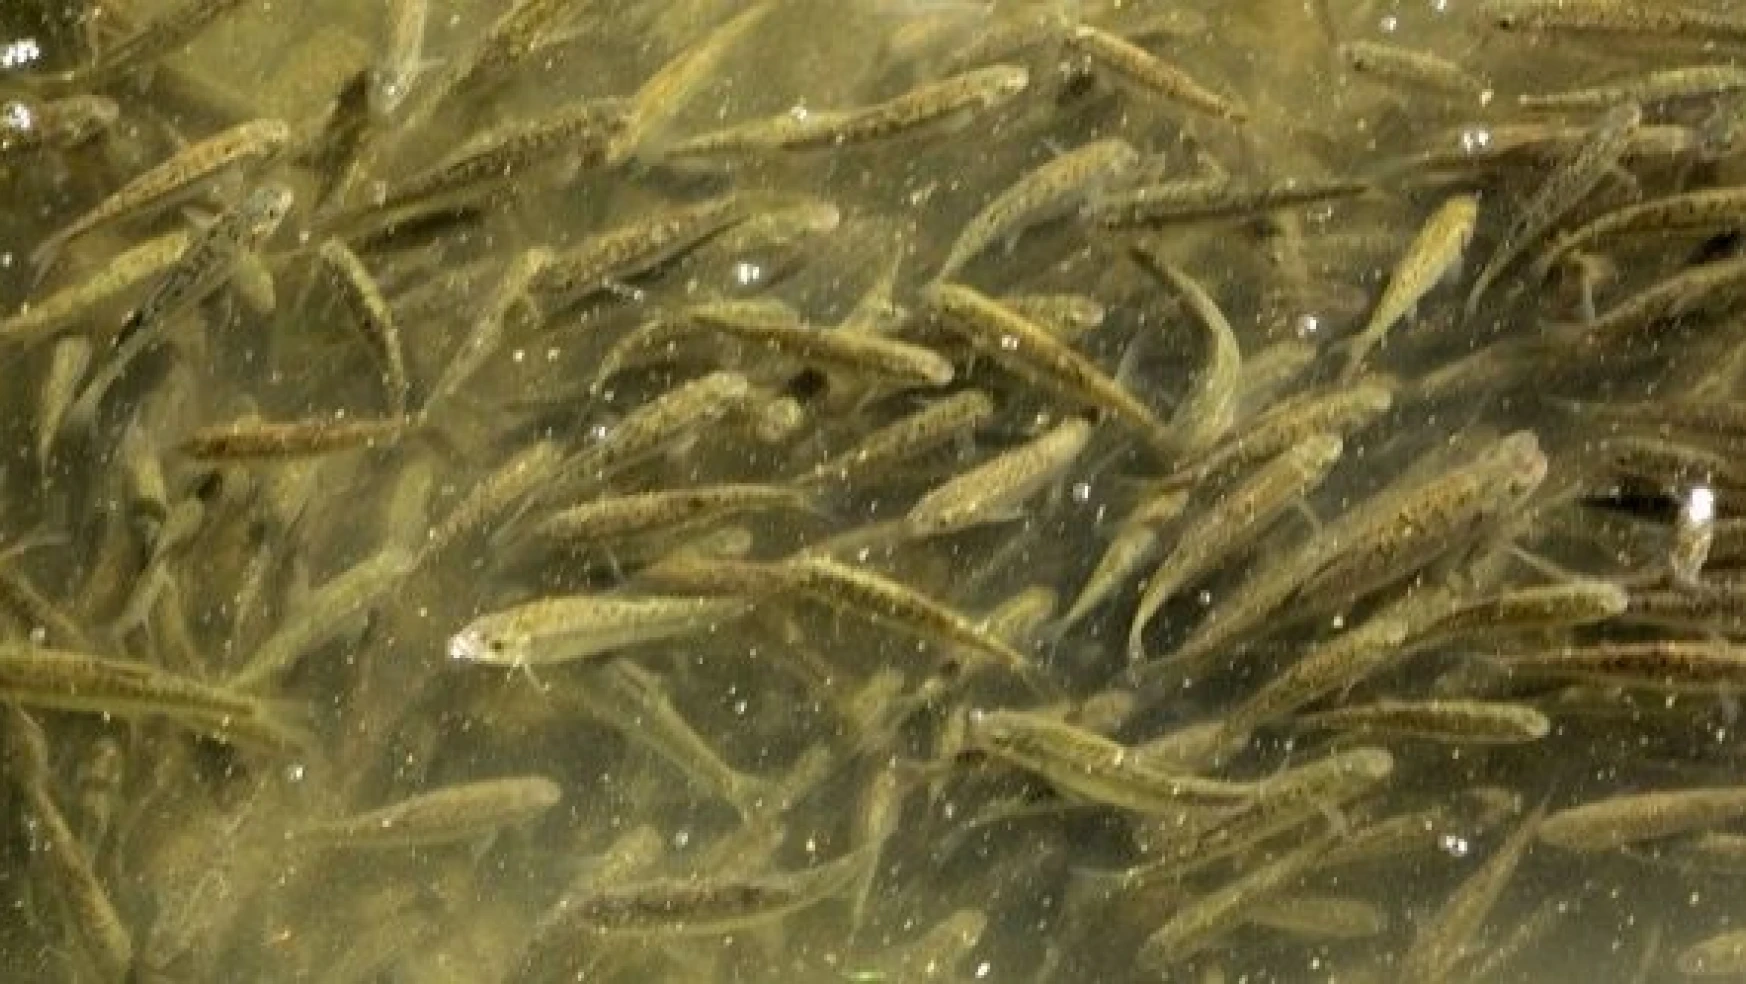 Islah edilen derede balık popülasyonu arttı